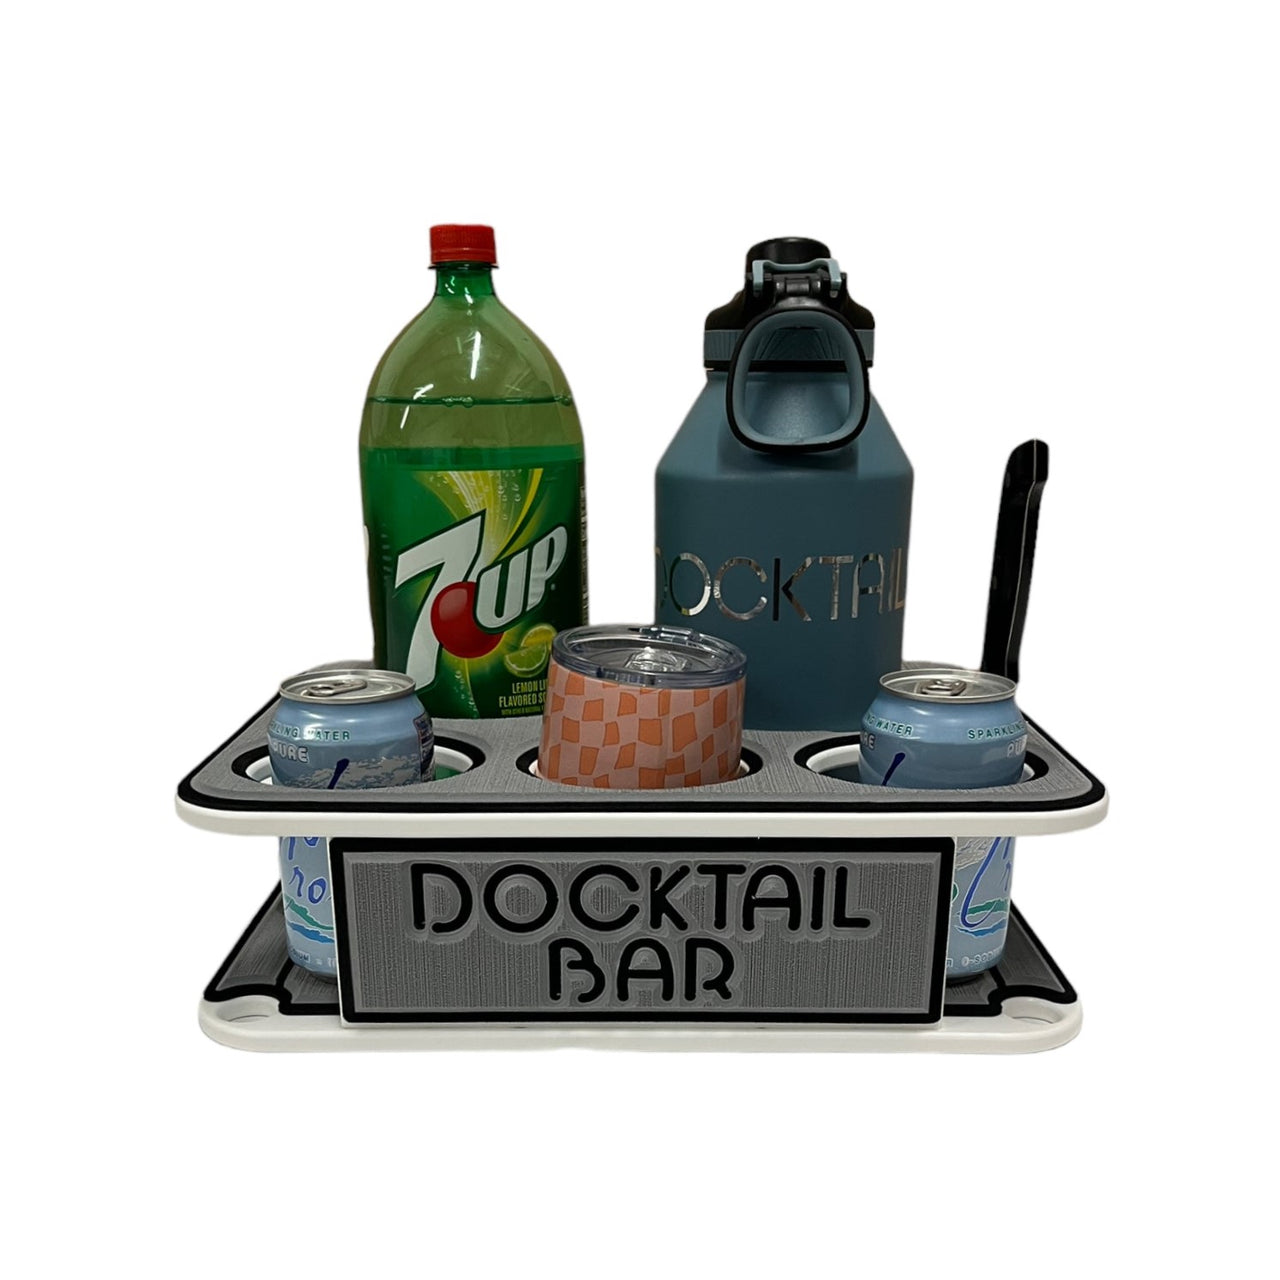 Docktail Jr Boat Cup Holder Caddy - Choose Your Mount Option - Then Color